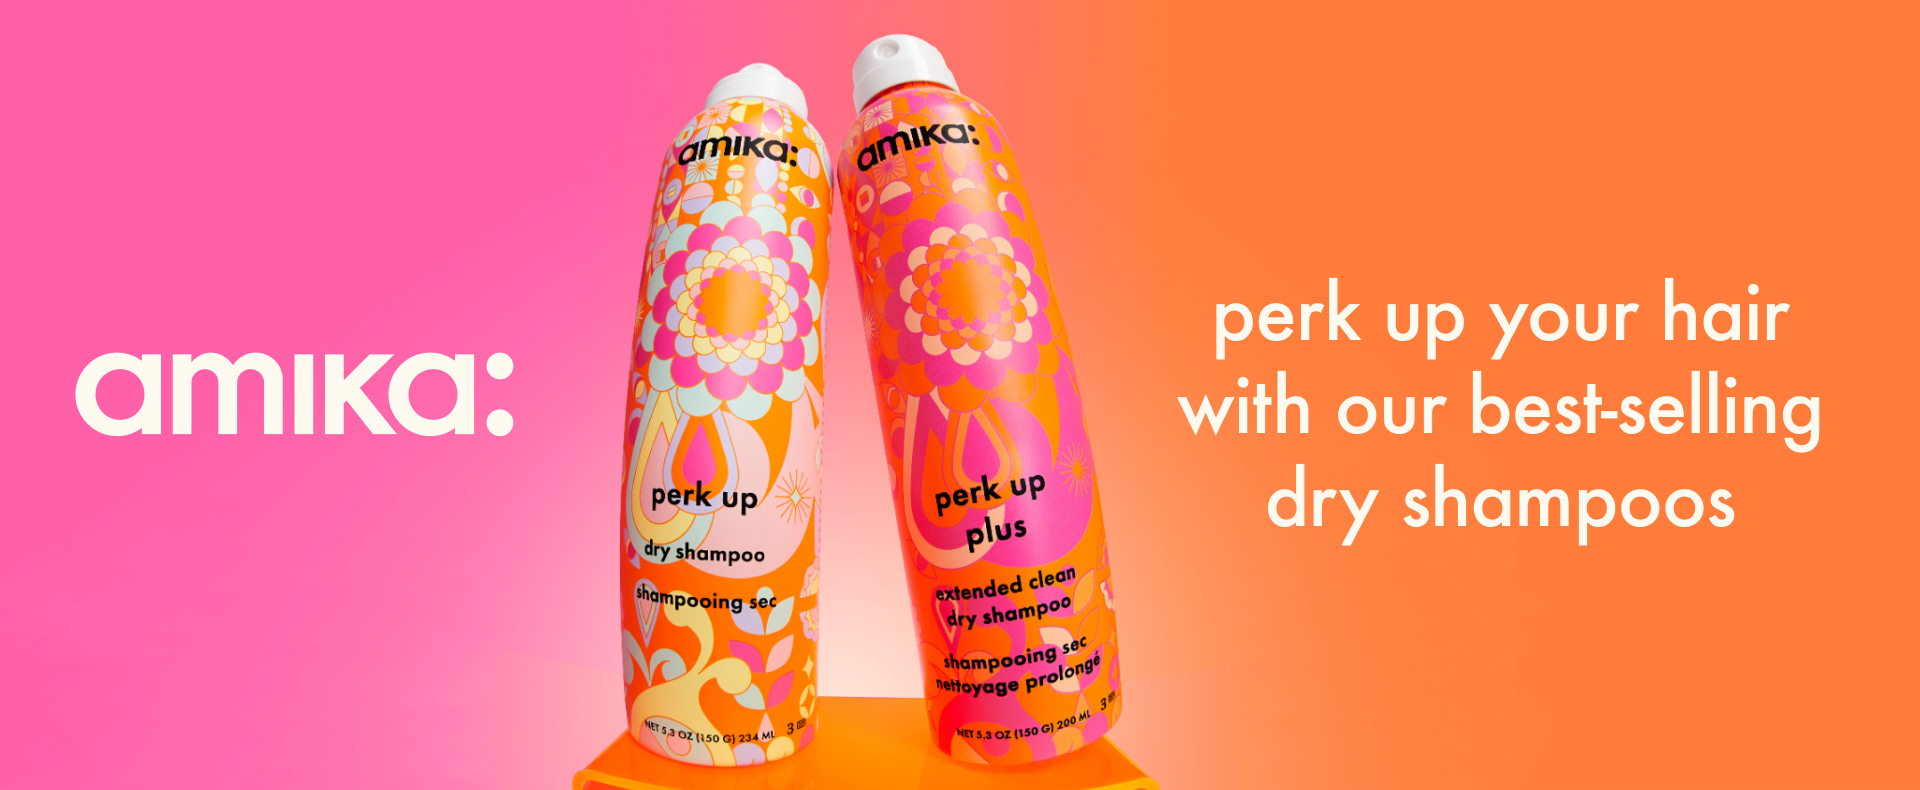 Amika PERK UP Dry Shampoo - 2 Types!